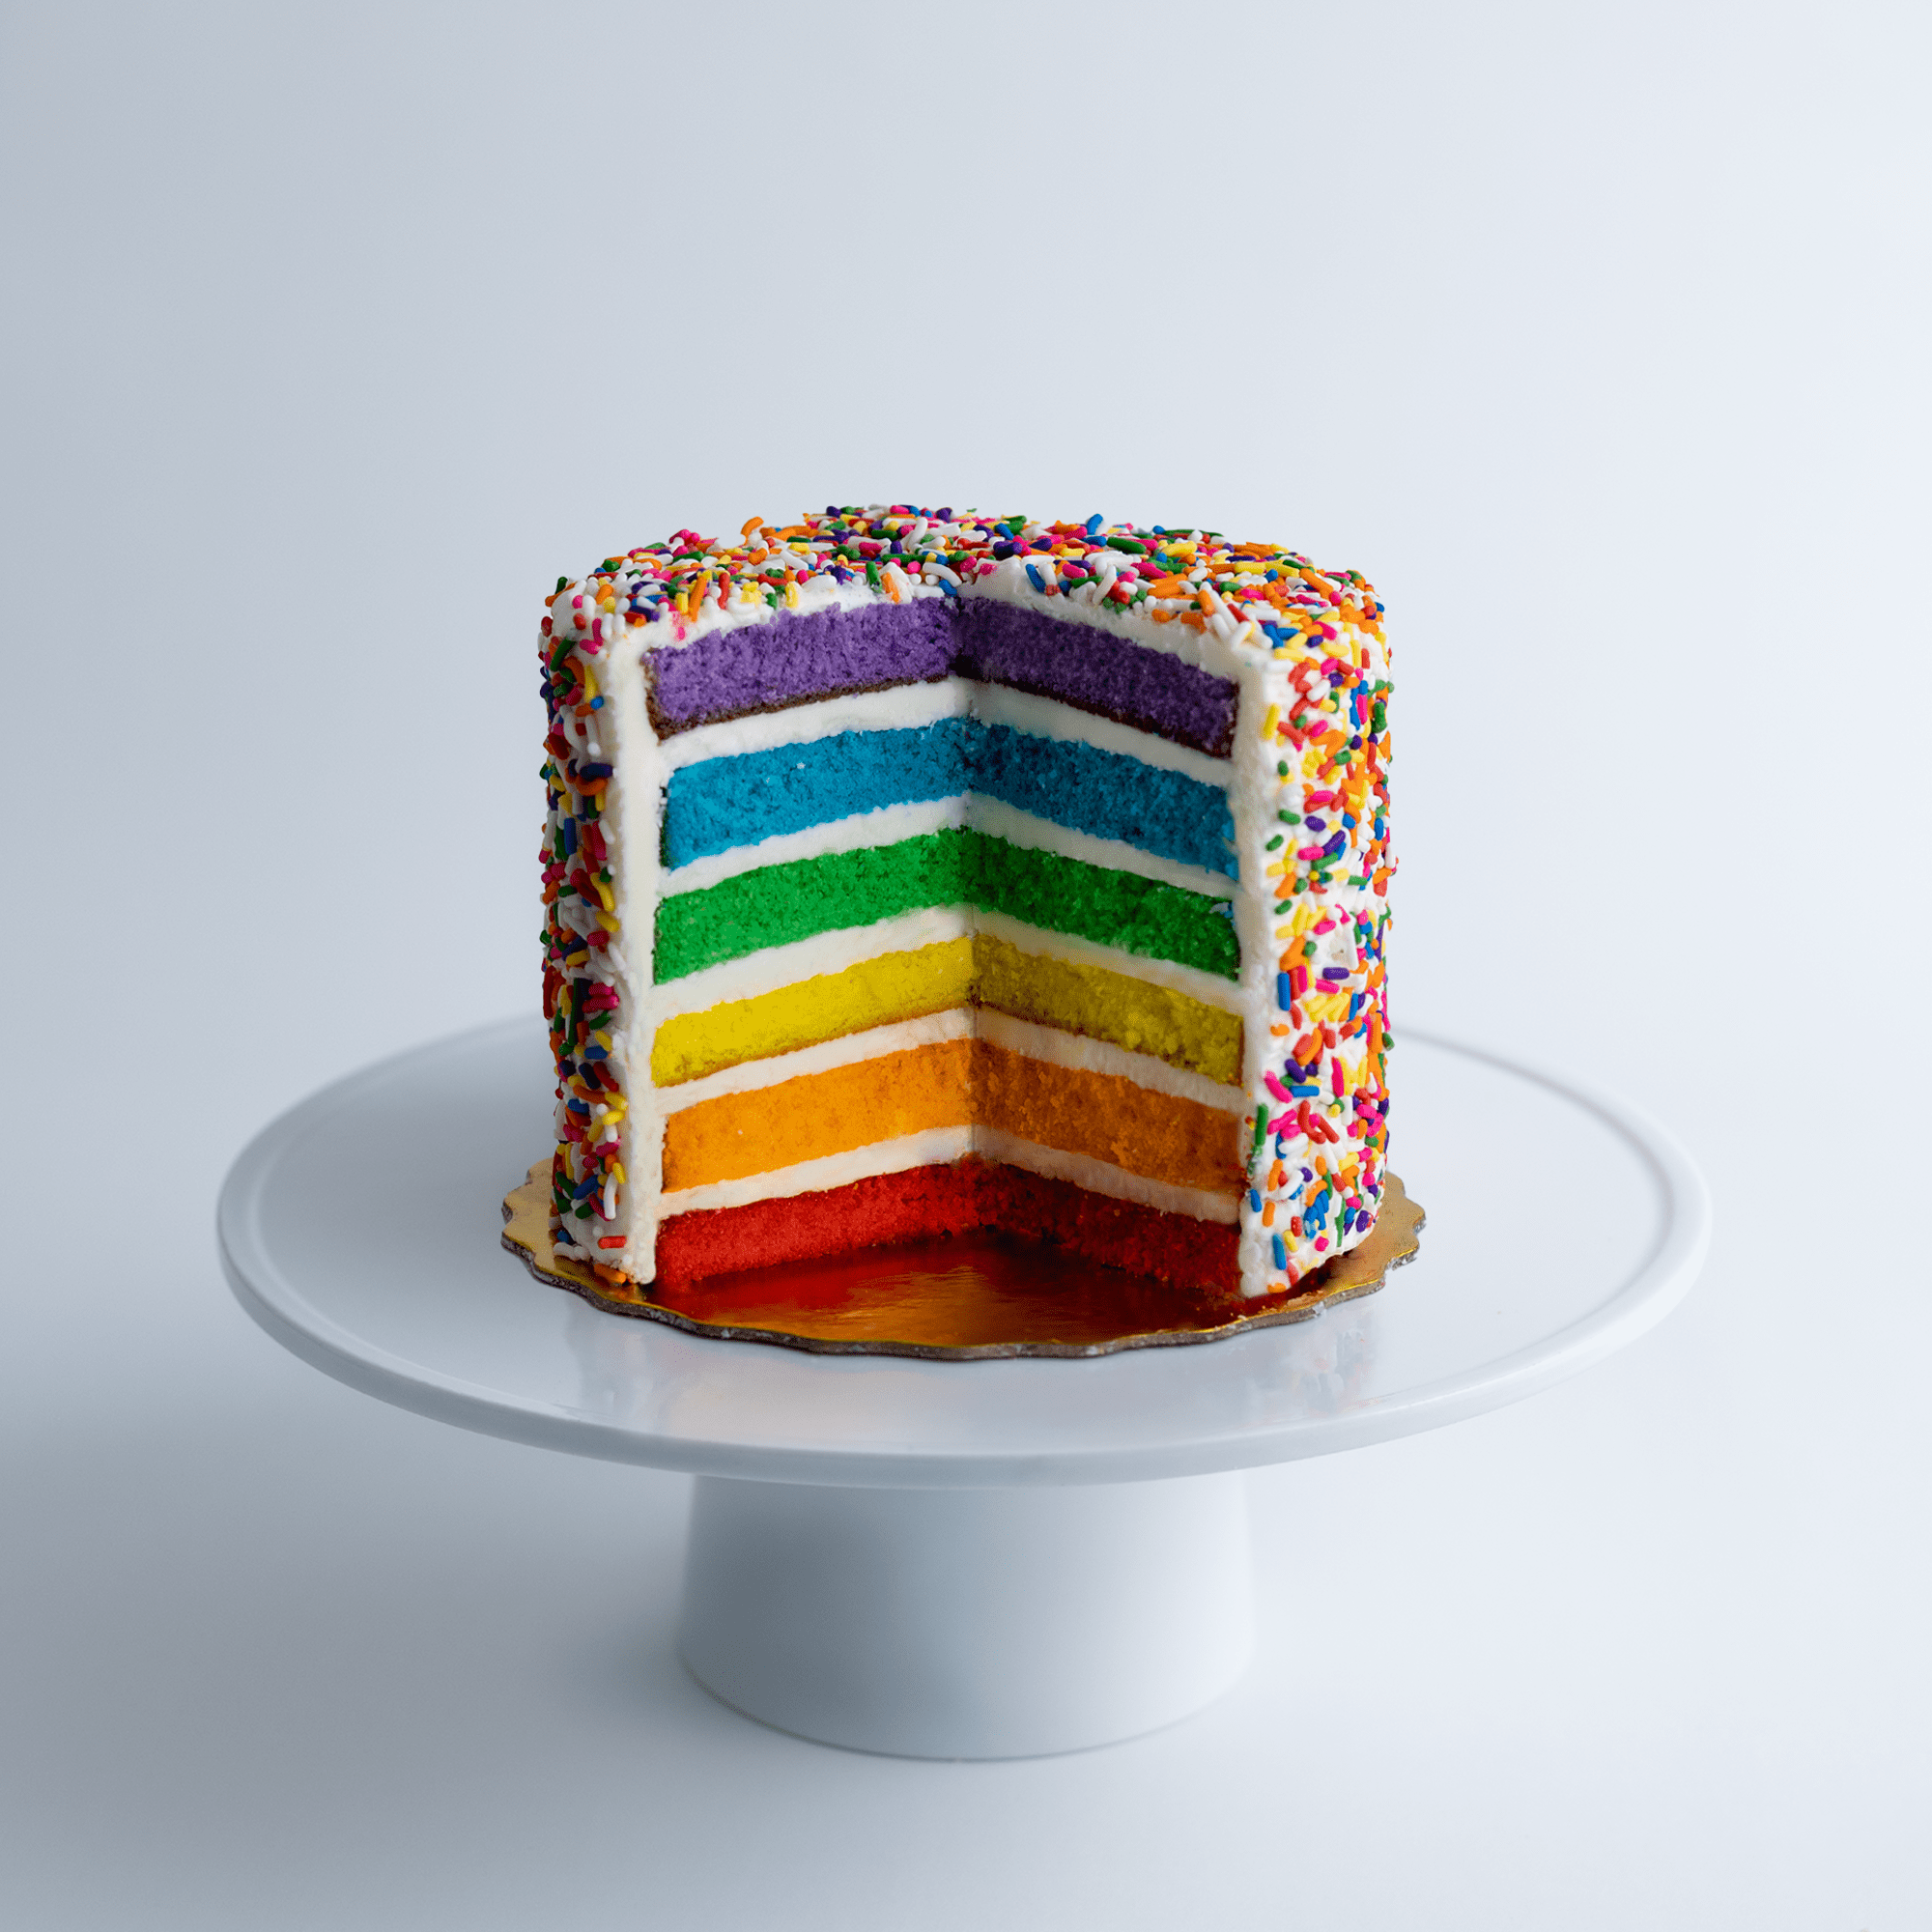 6 Louis Vuitton cake – SOSOBAKED